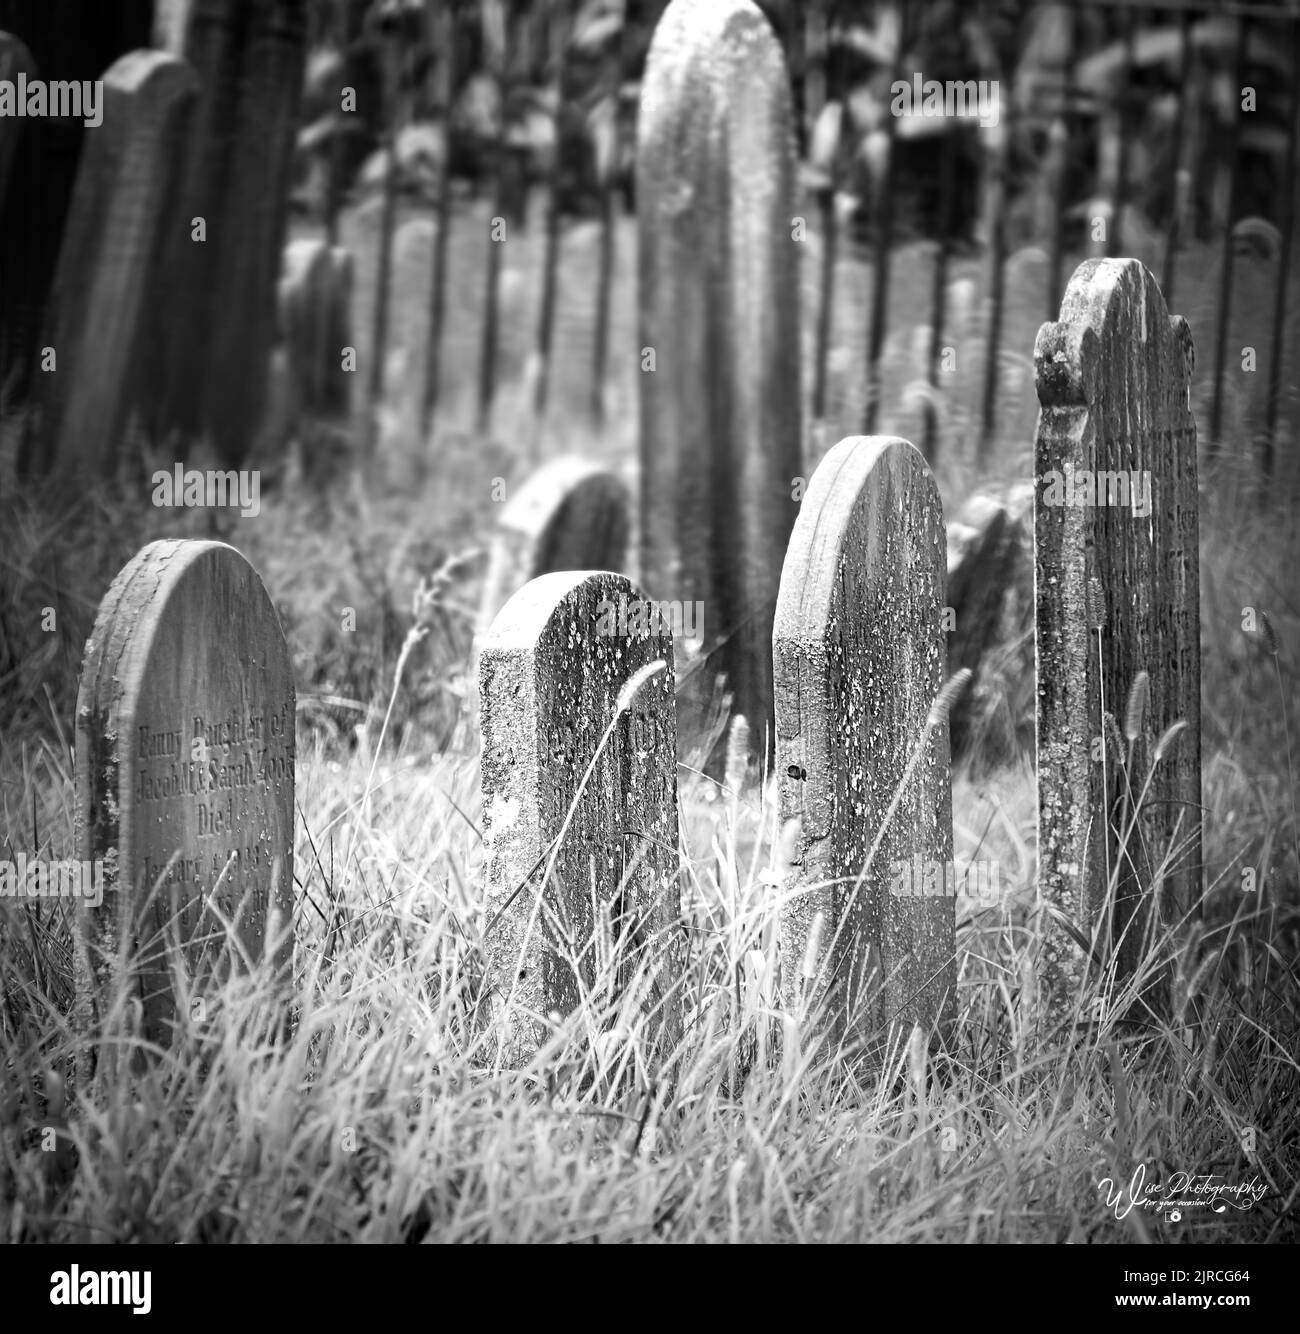 Lapidi di invecchiamento in un vecchio, solitario, dimenticato cimitero con erba in eccesso e barre di recinzione in ghisa in bianco e nero durante la primavera, l'estate, l'autunno Foto Stock